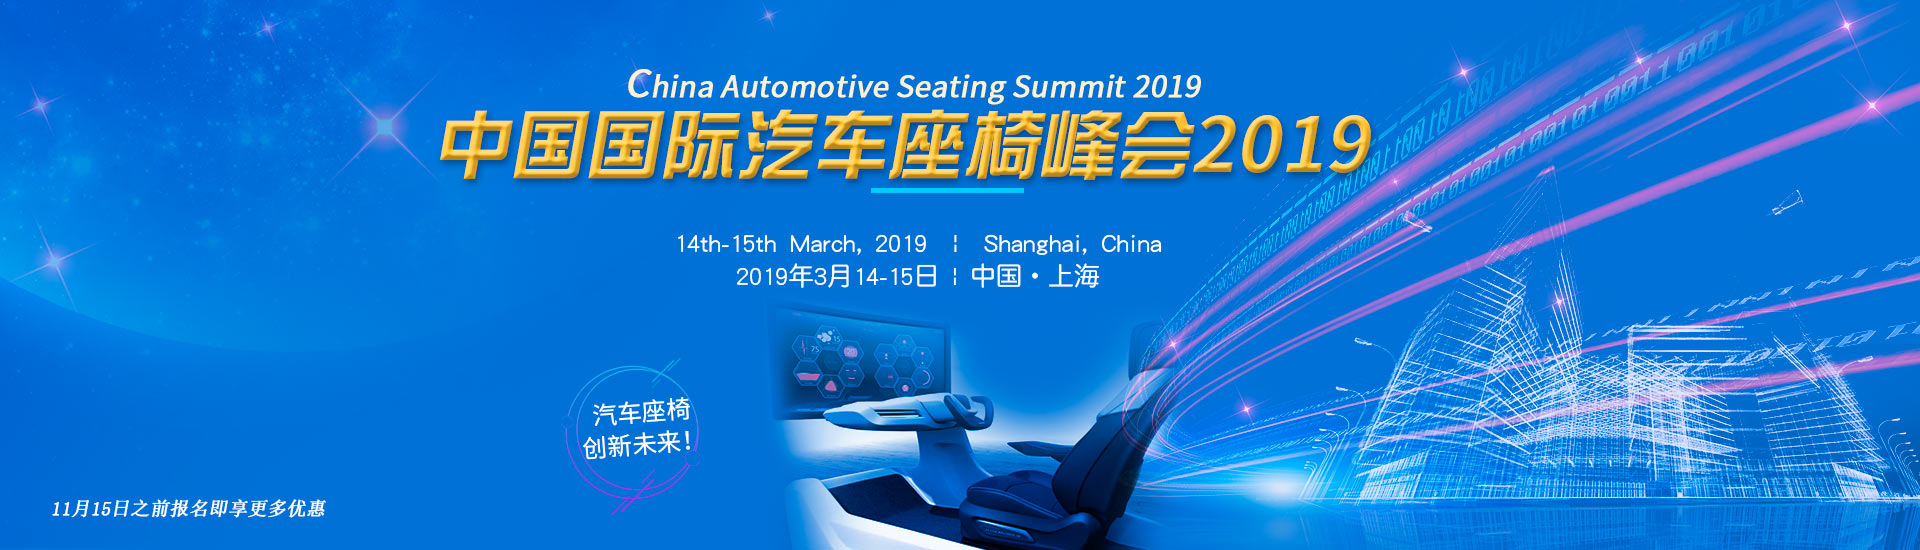 中国国际汽车座椅峰会